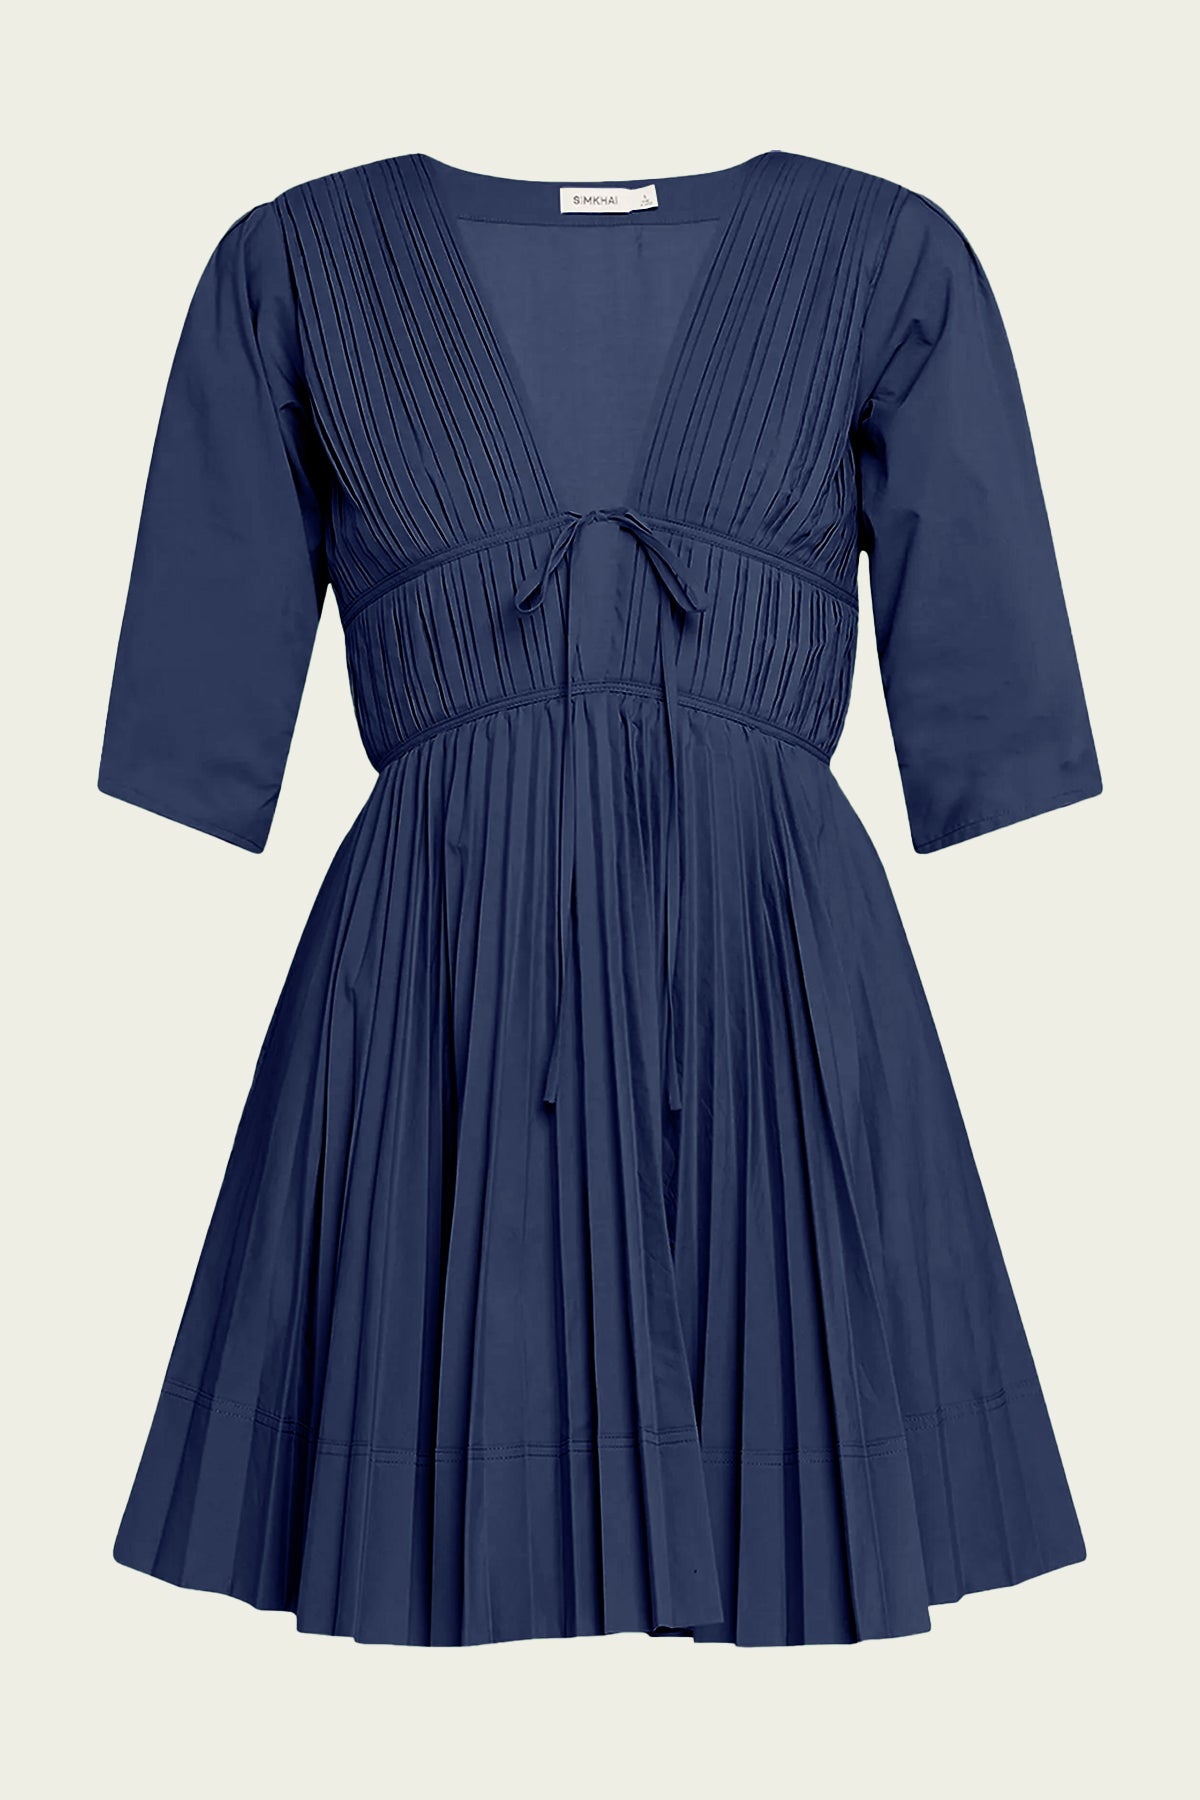 Steph Mini Dress in Midnight - shop-olivia.com